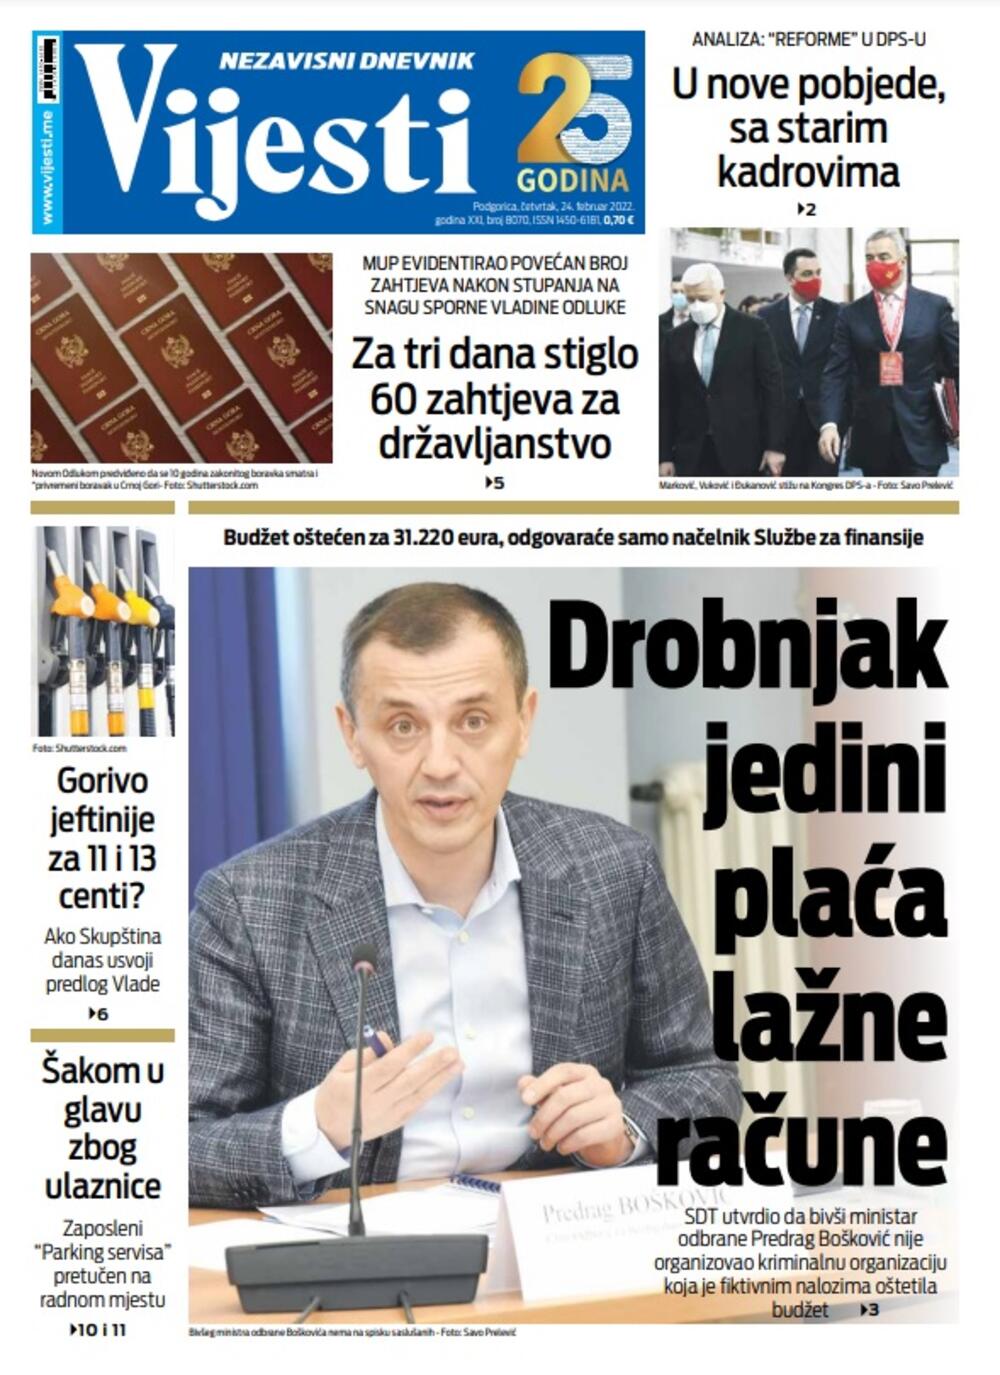 Naslovna strana "Vijesti" za 24. februar 2022., Foto: Vijesti